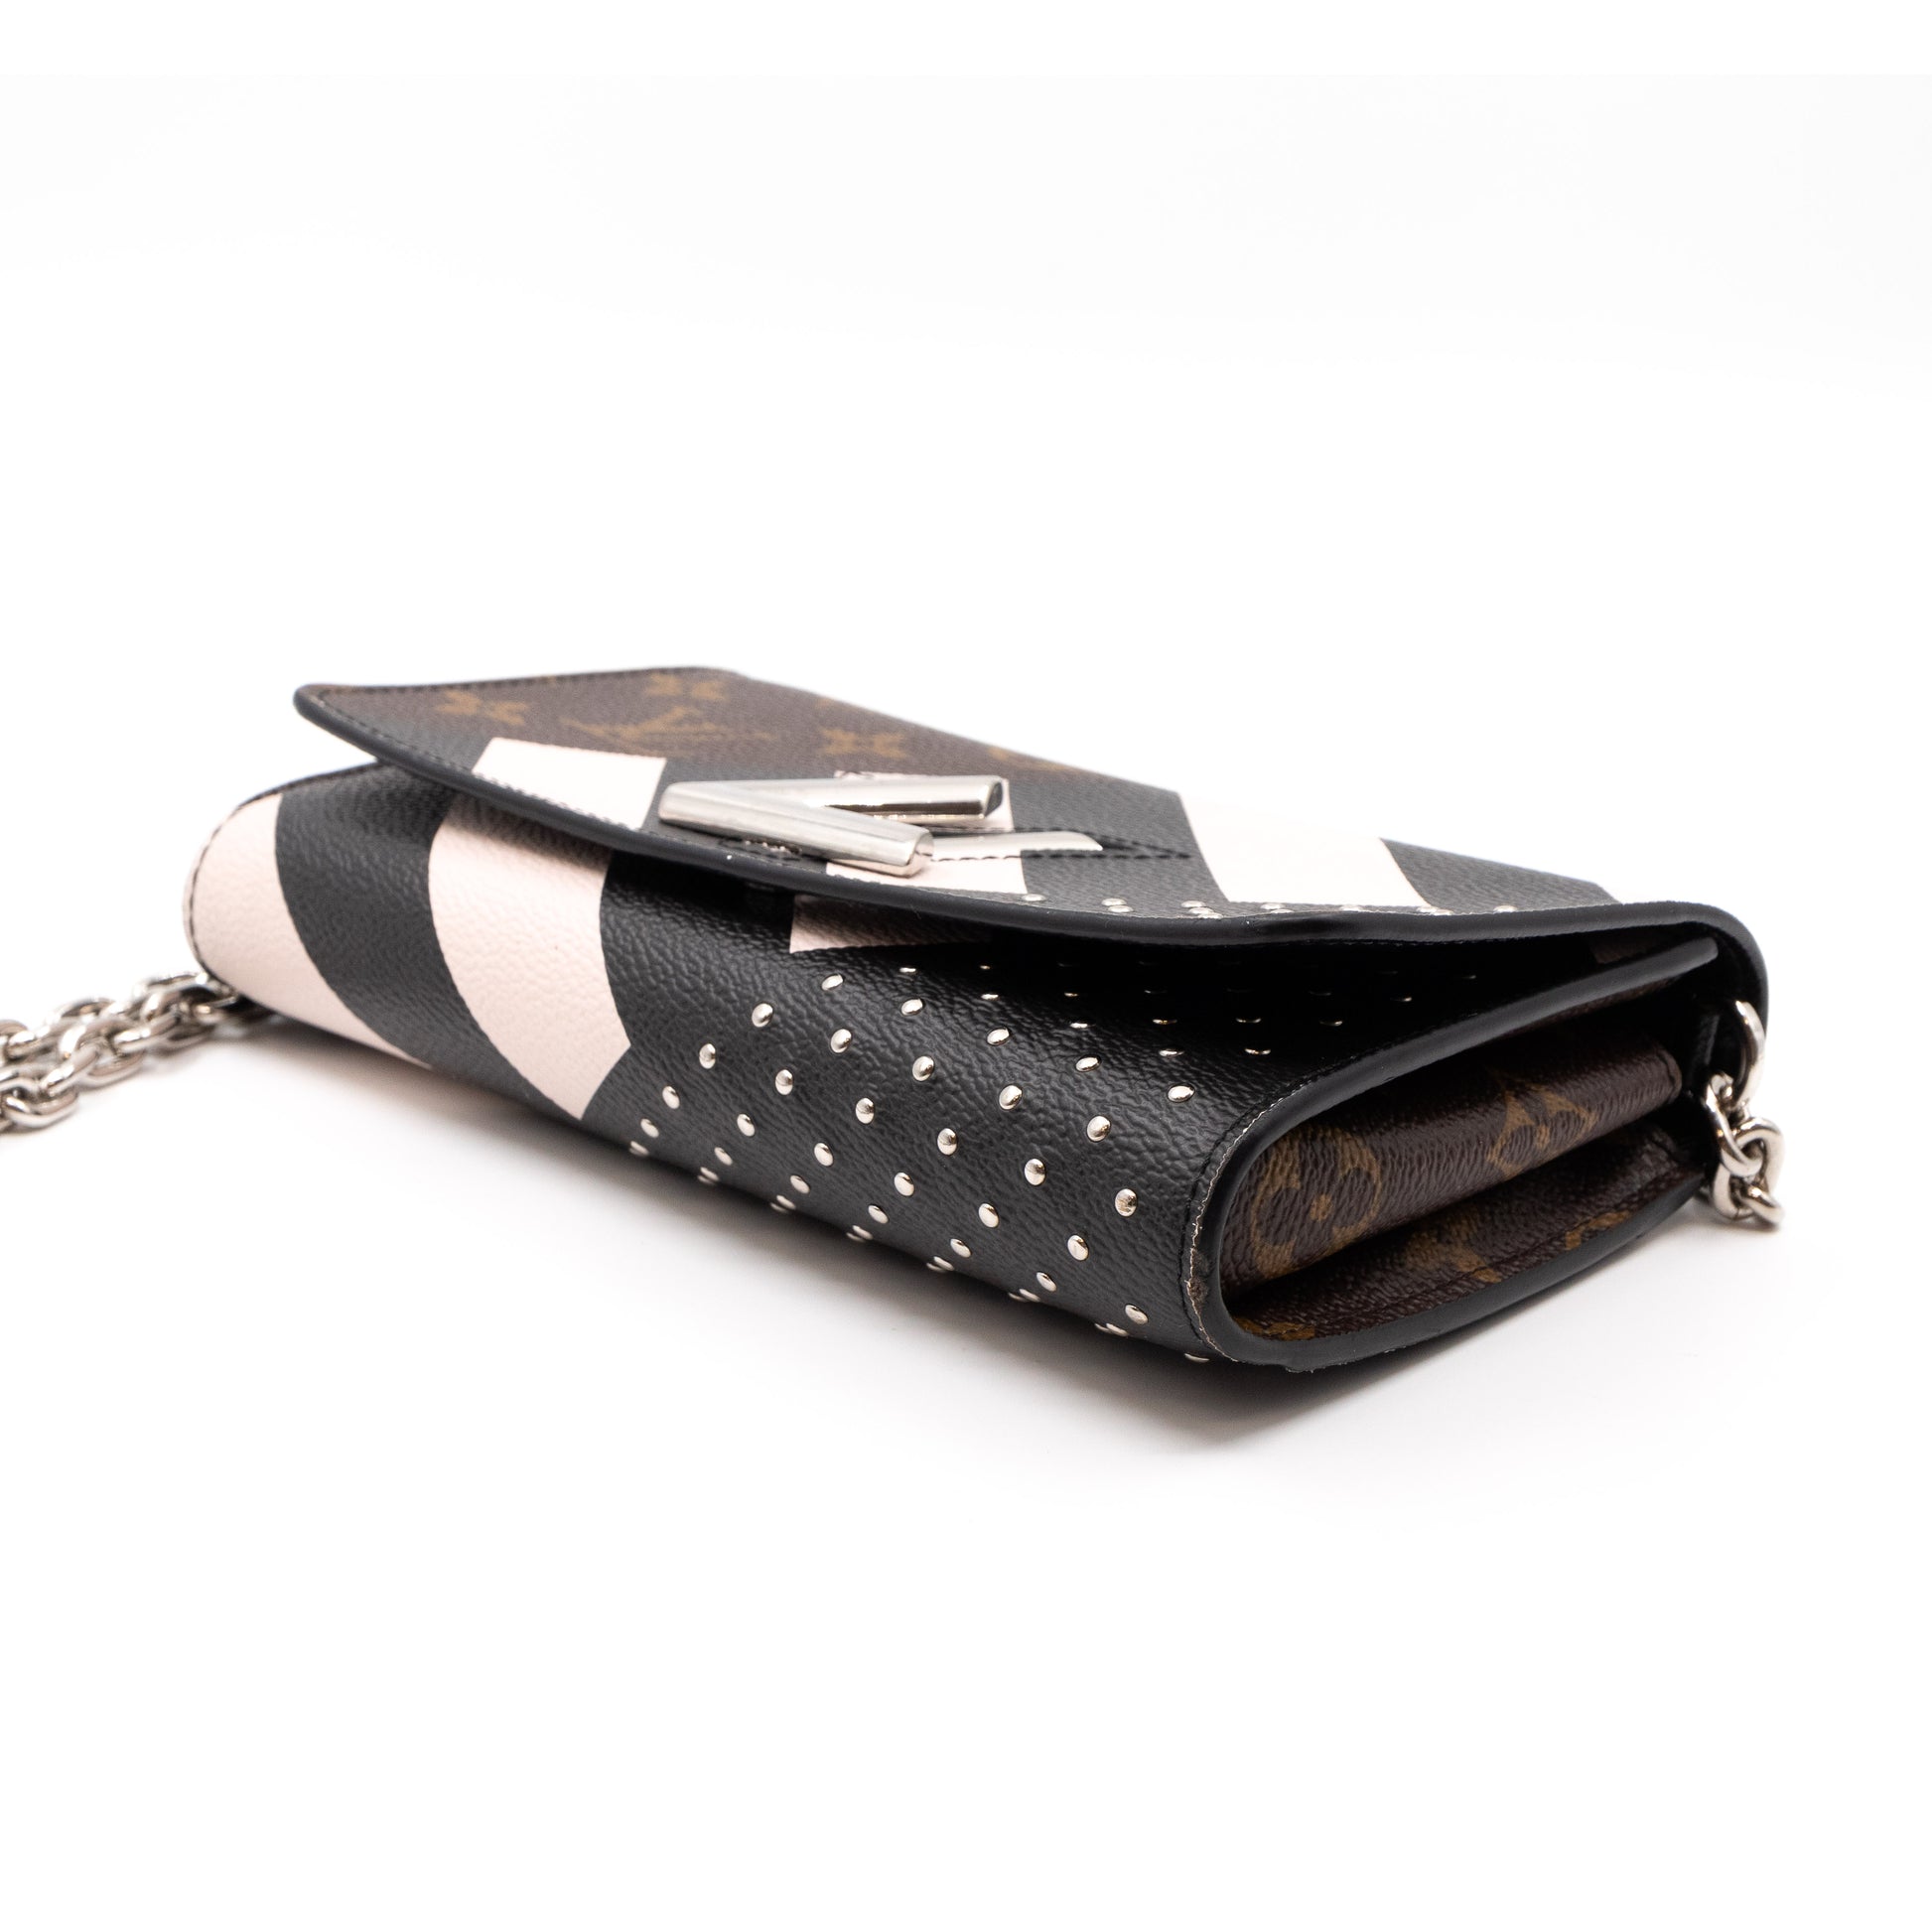 Louis Vuitton - Authenticated Twist Long Chain Wallet Handbag - Leather Multicolour Plain for Women, Good Condition